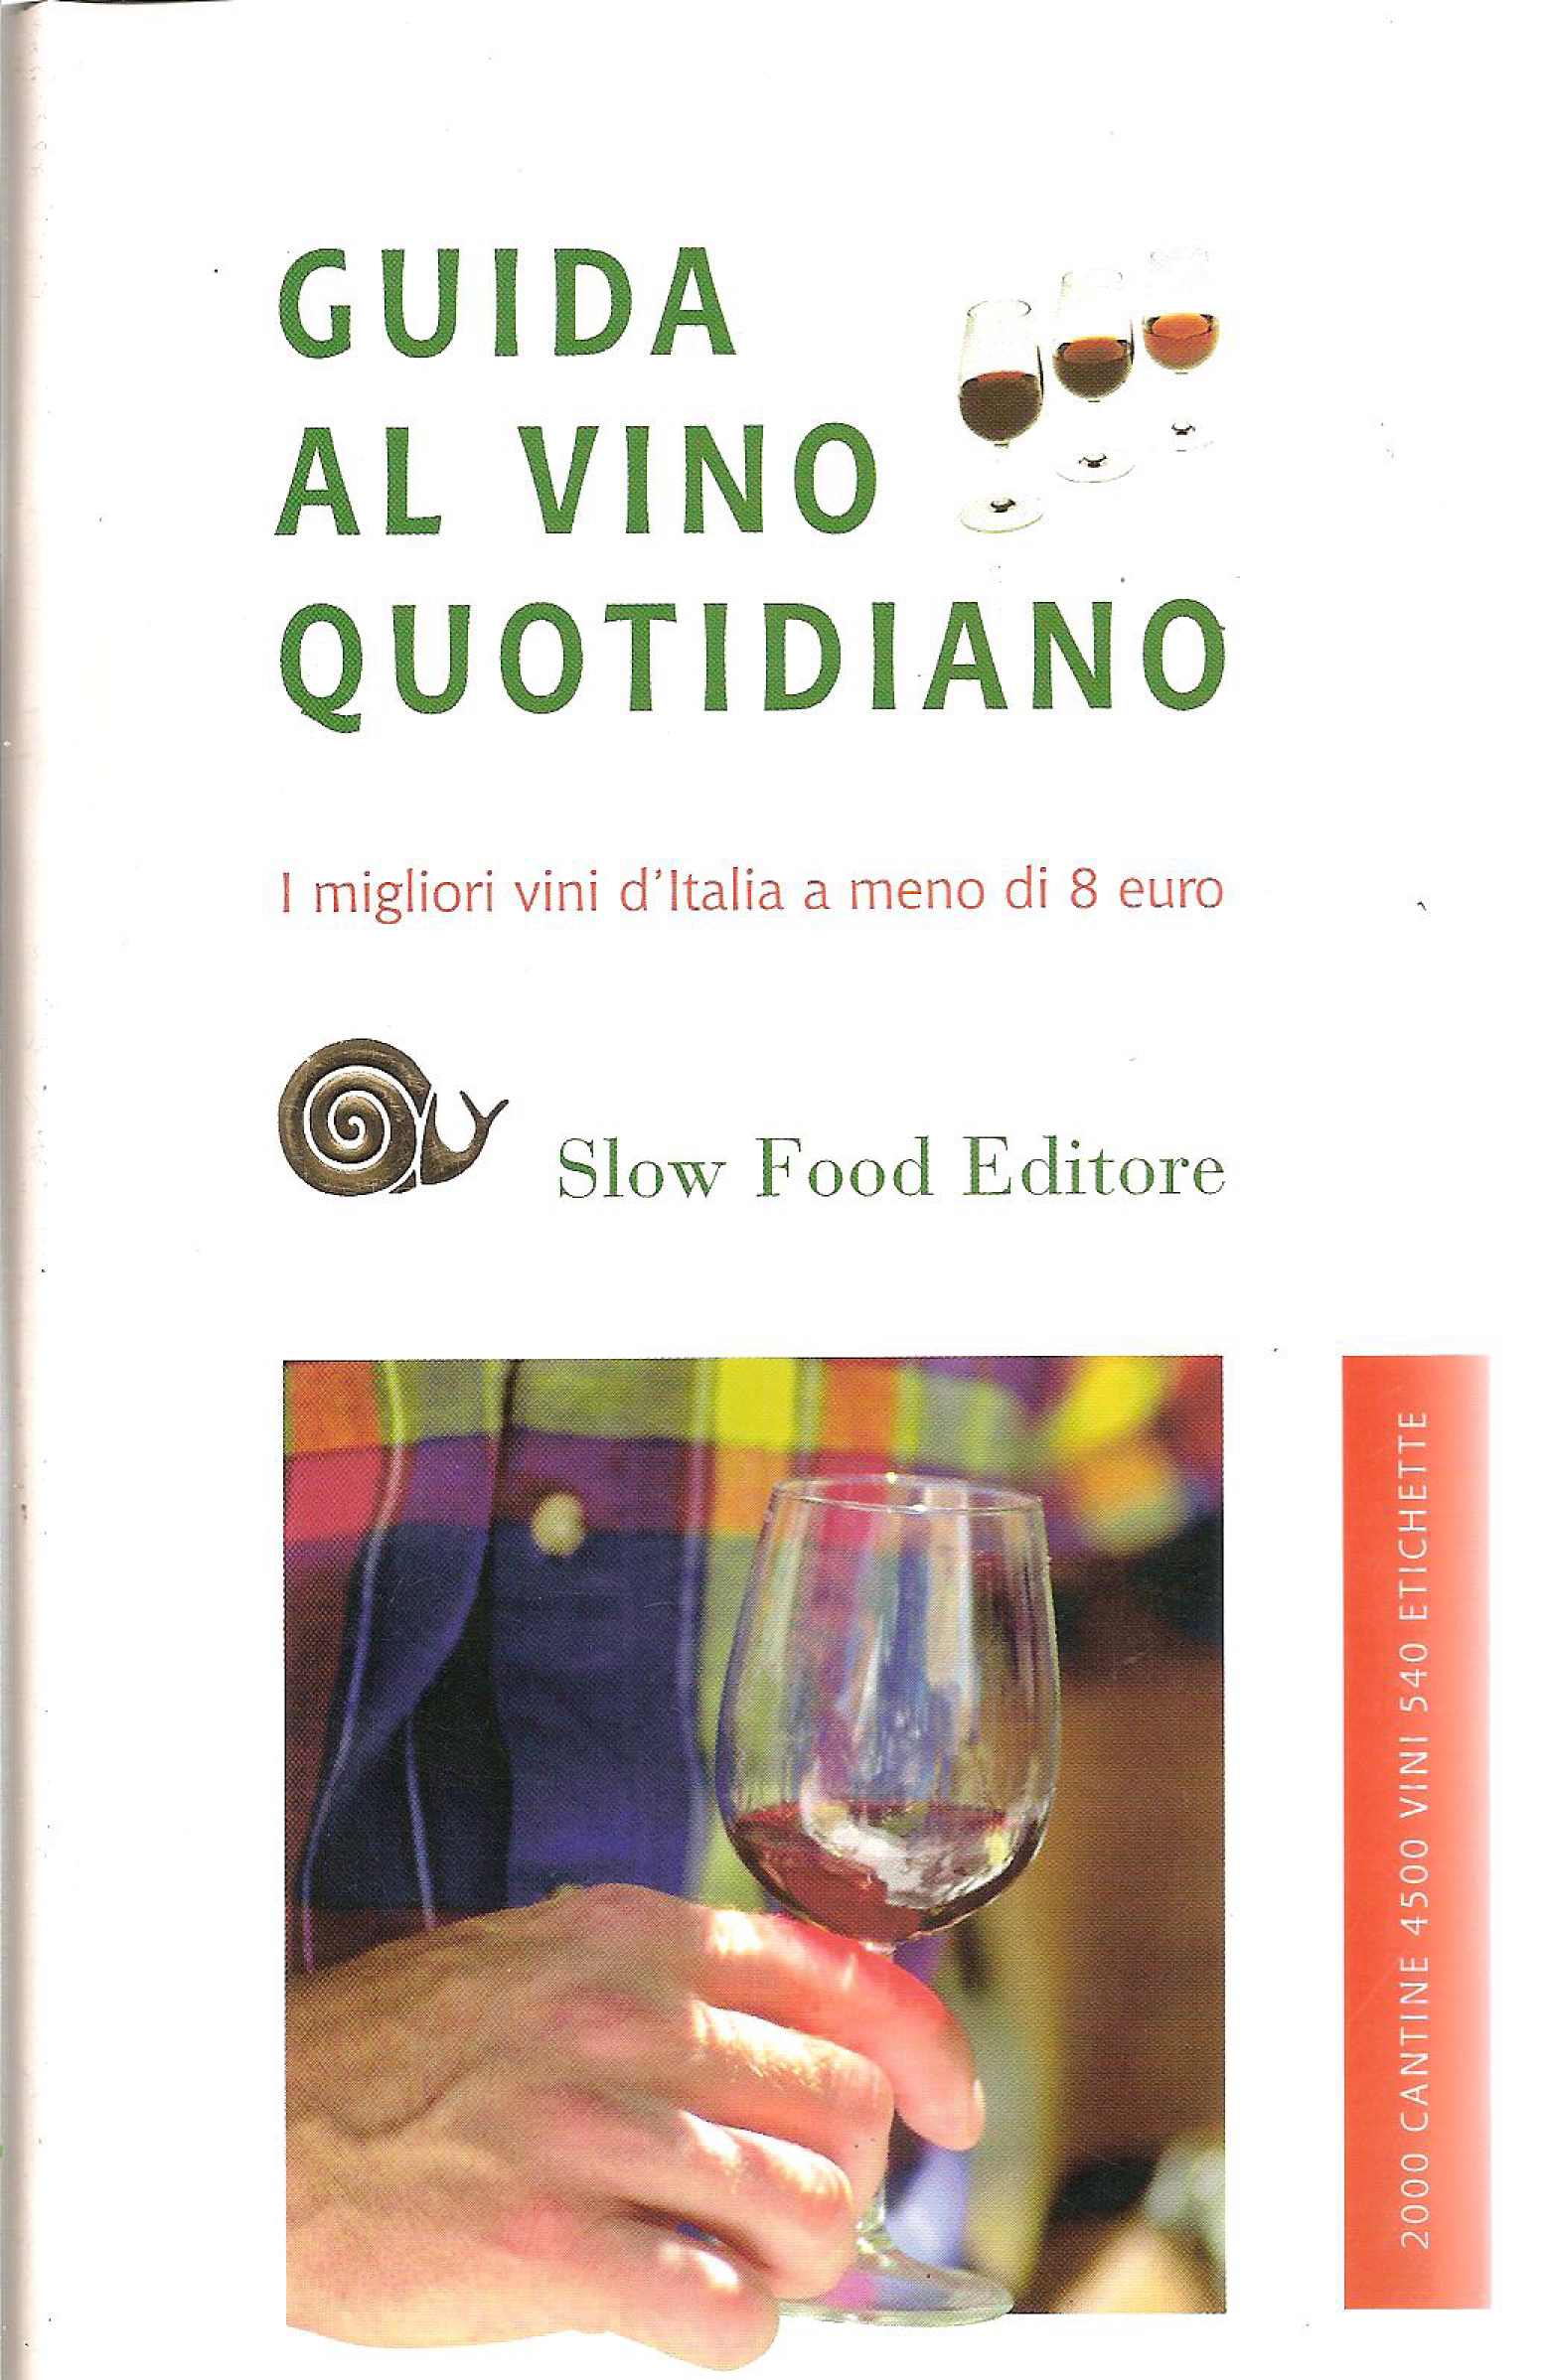 I migliori vini d'Italia 2008